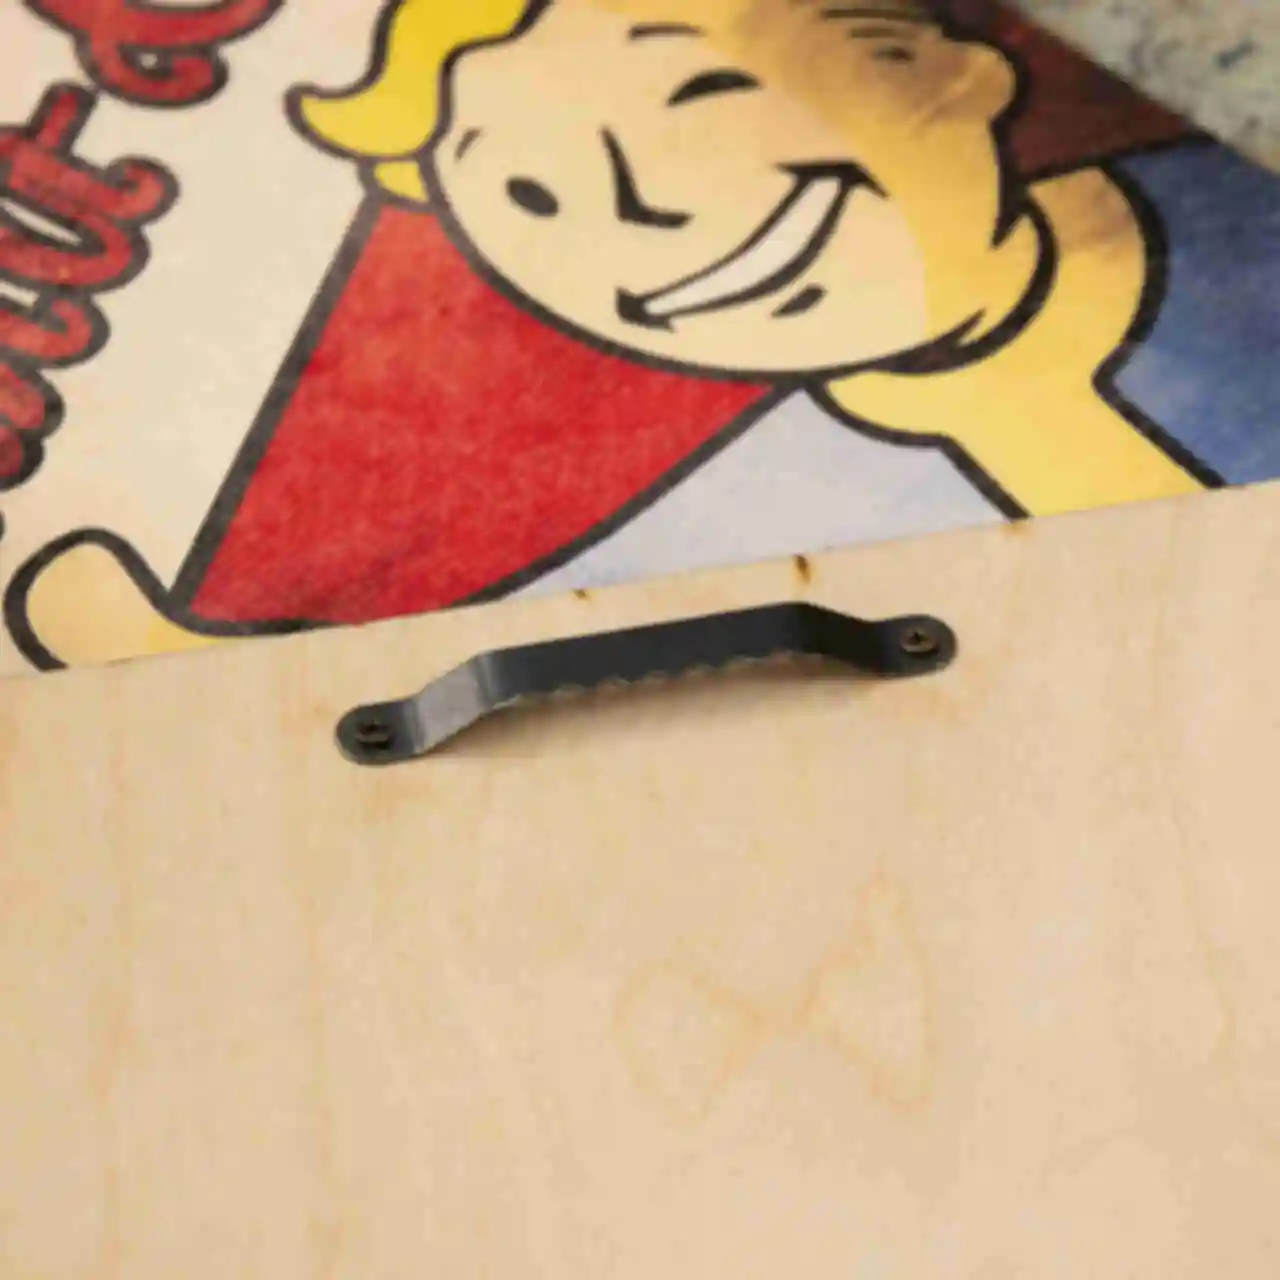 Деревянный постер Фоллаут • Vault Boy • Плакат Fallout • Подарок для геймера. Фото №1